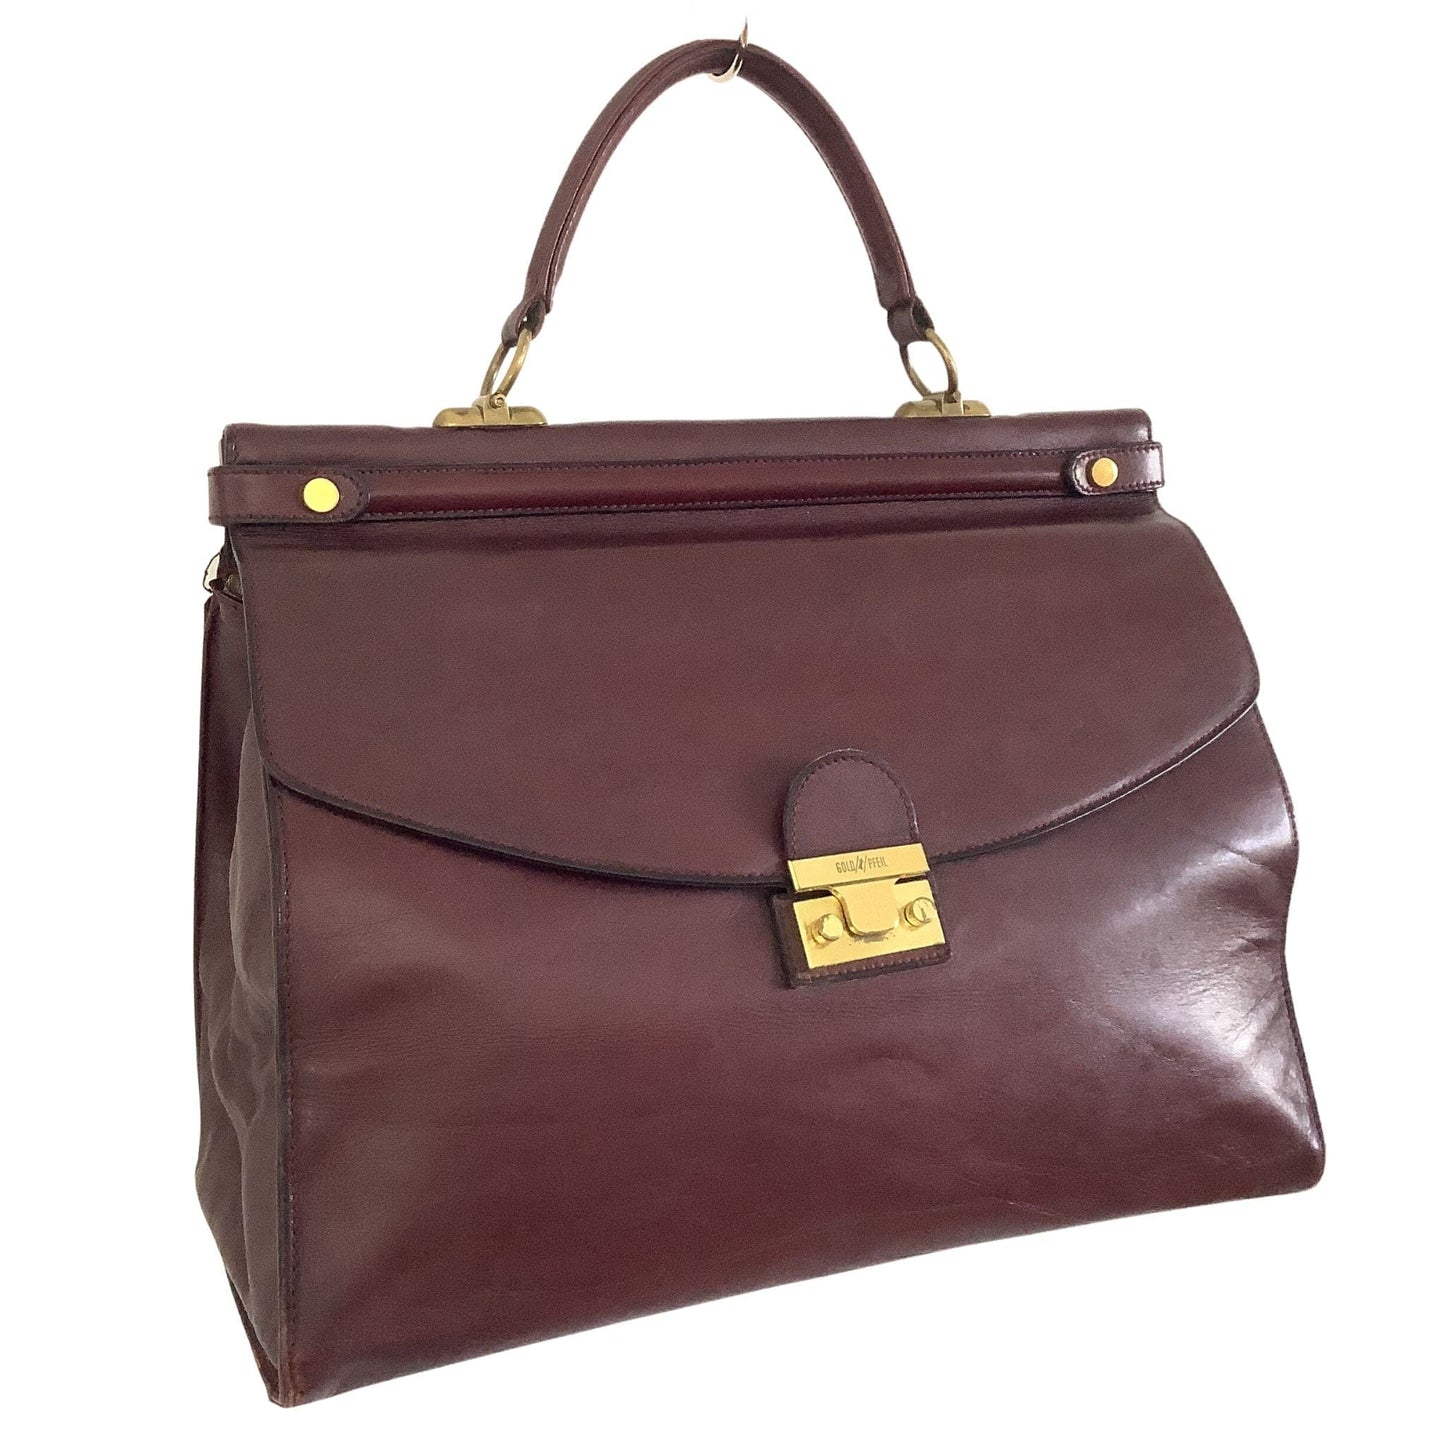 VTG Gold Pfeil Bag Burgundy / Leather / Vintage 1980s